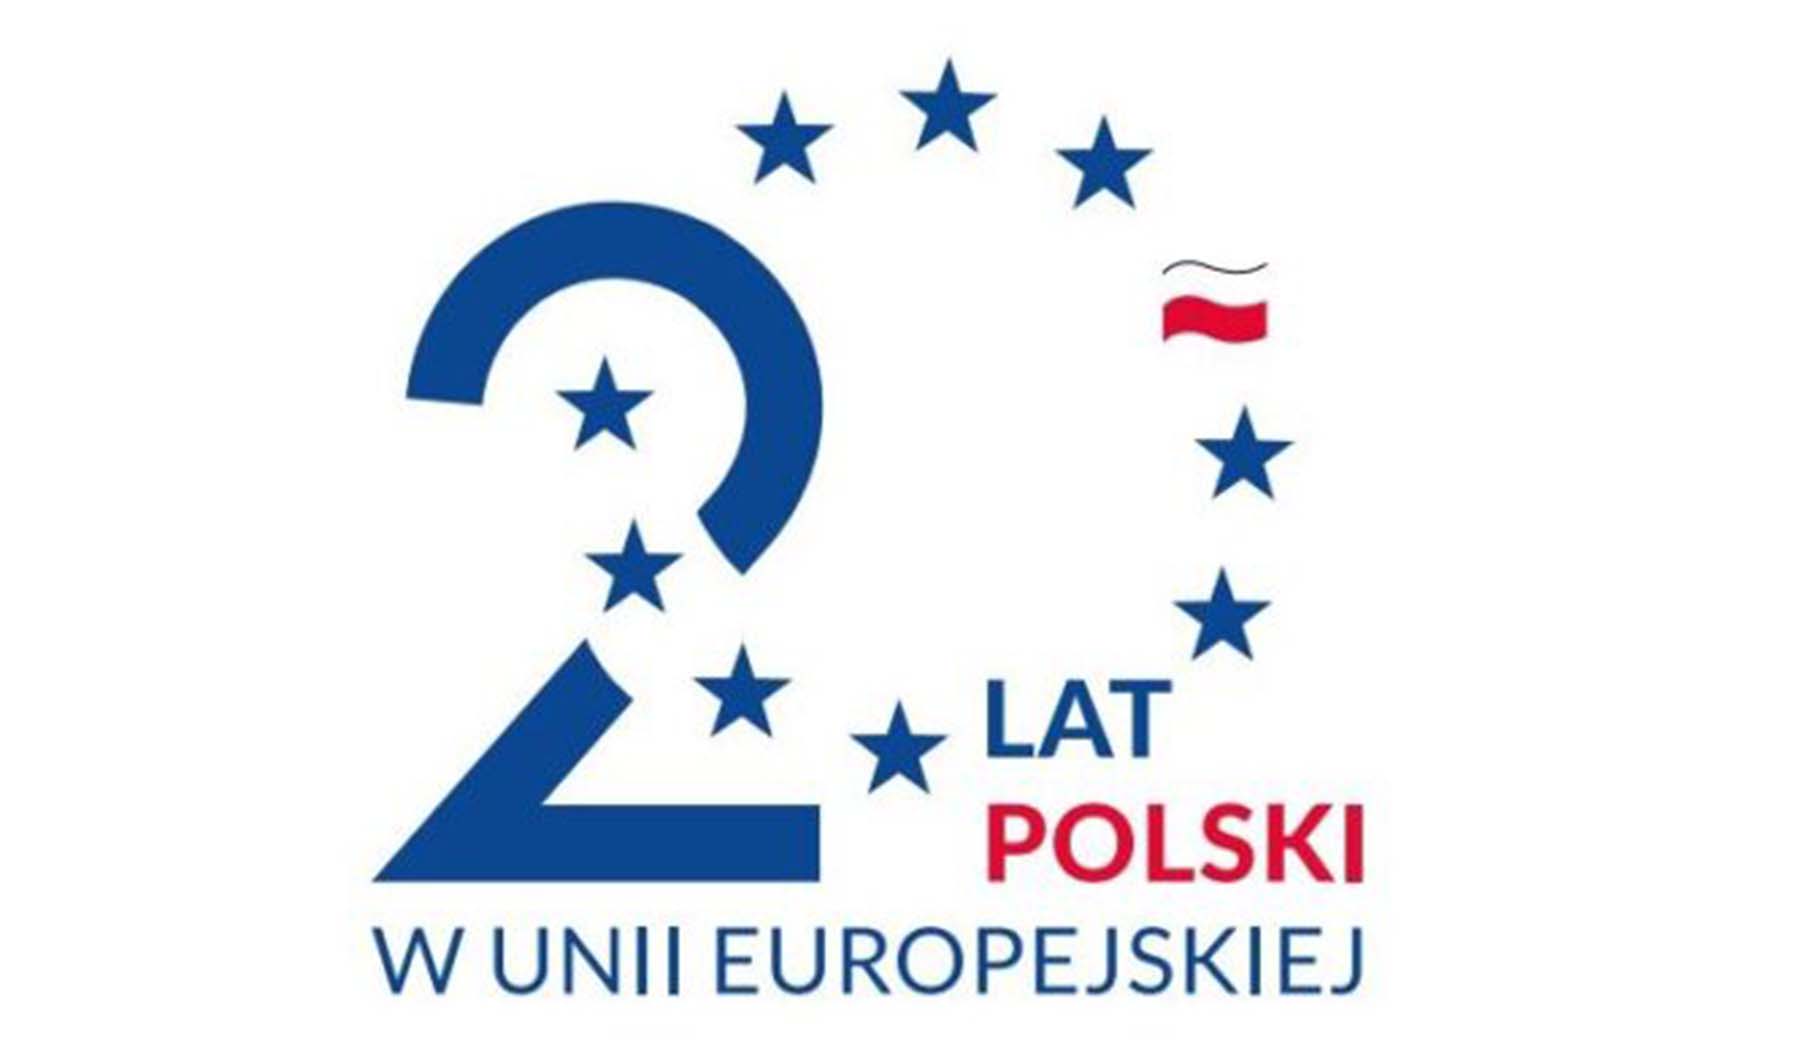 Dołącz do obchodów 20-lecia Polski w UE